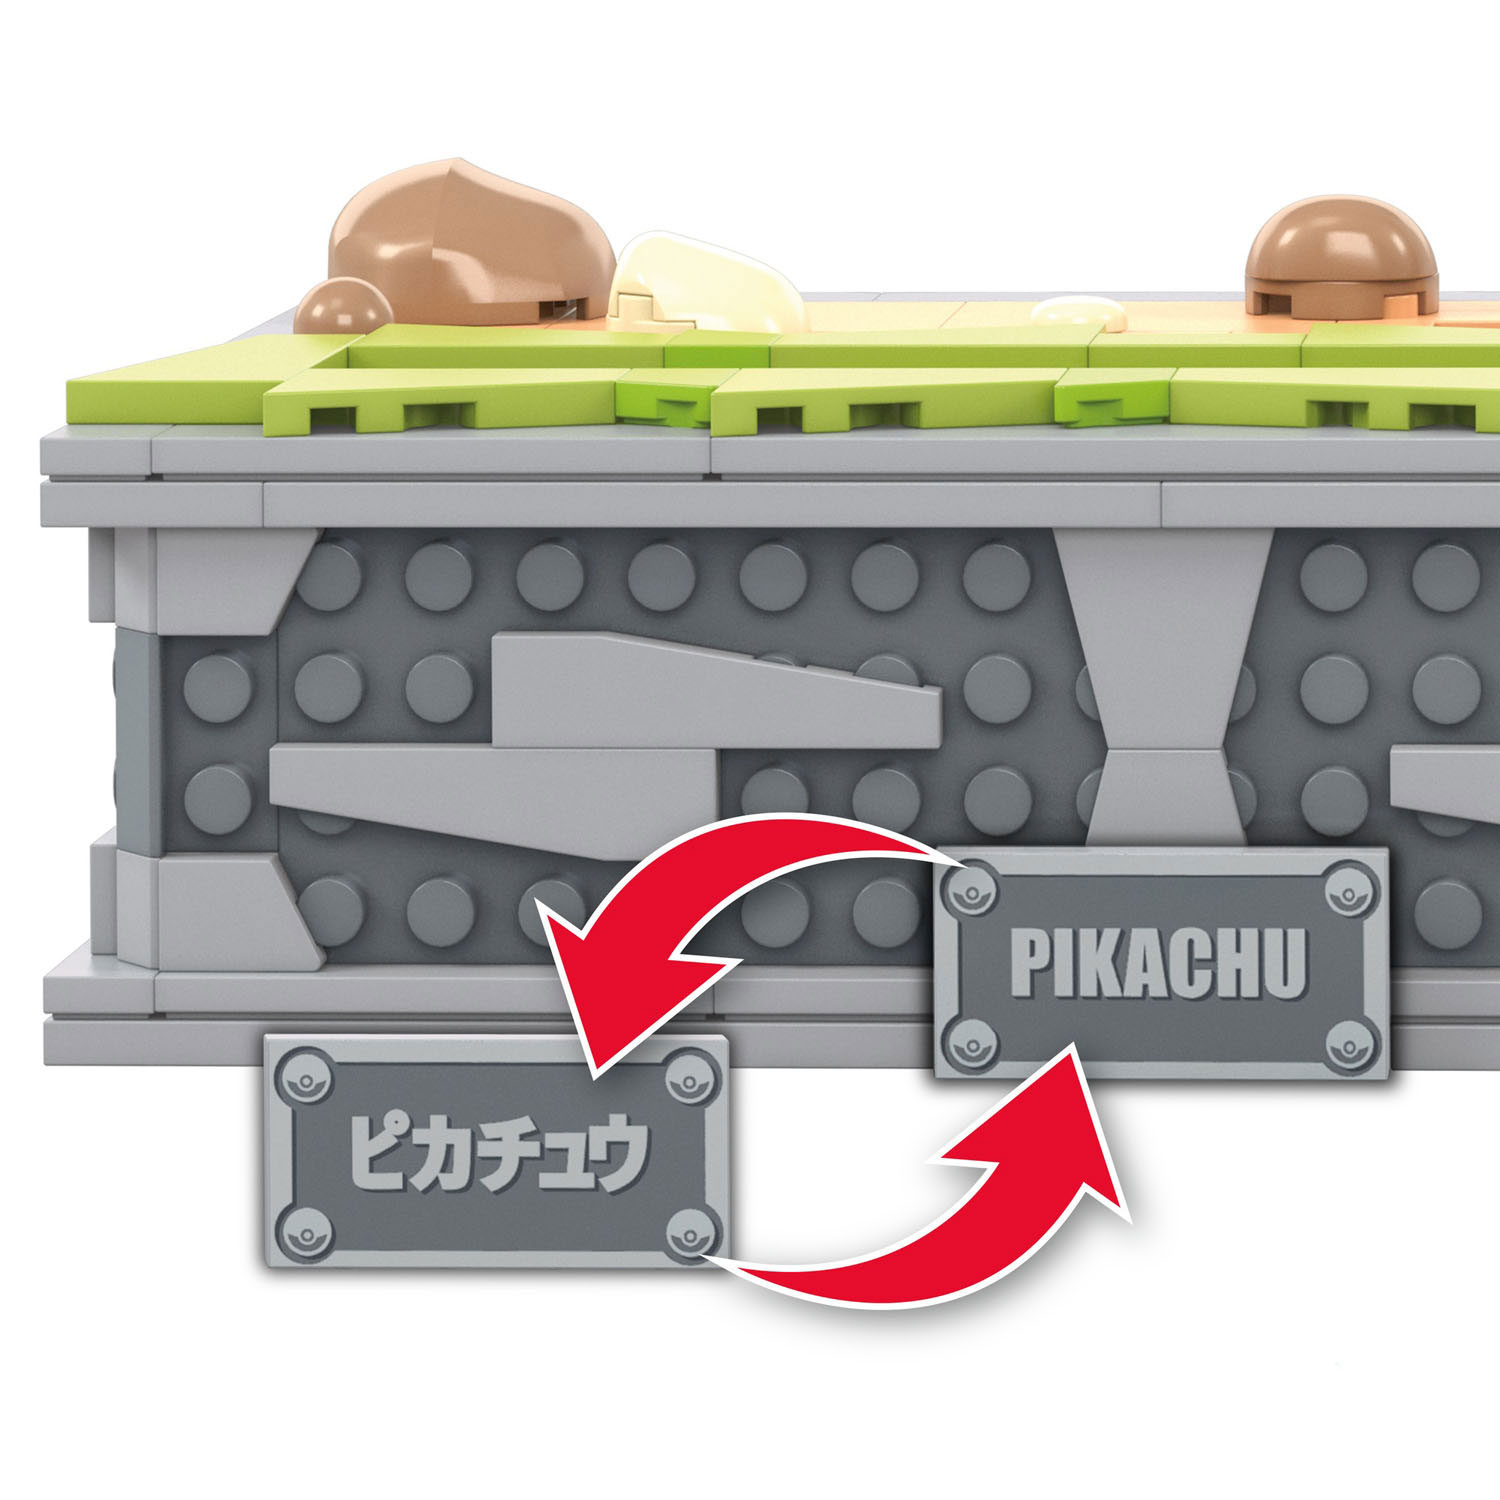 Mega Construx - Pokémon Mouvement Pikachu